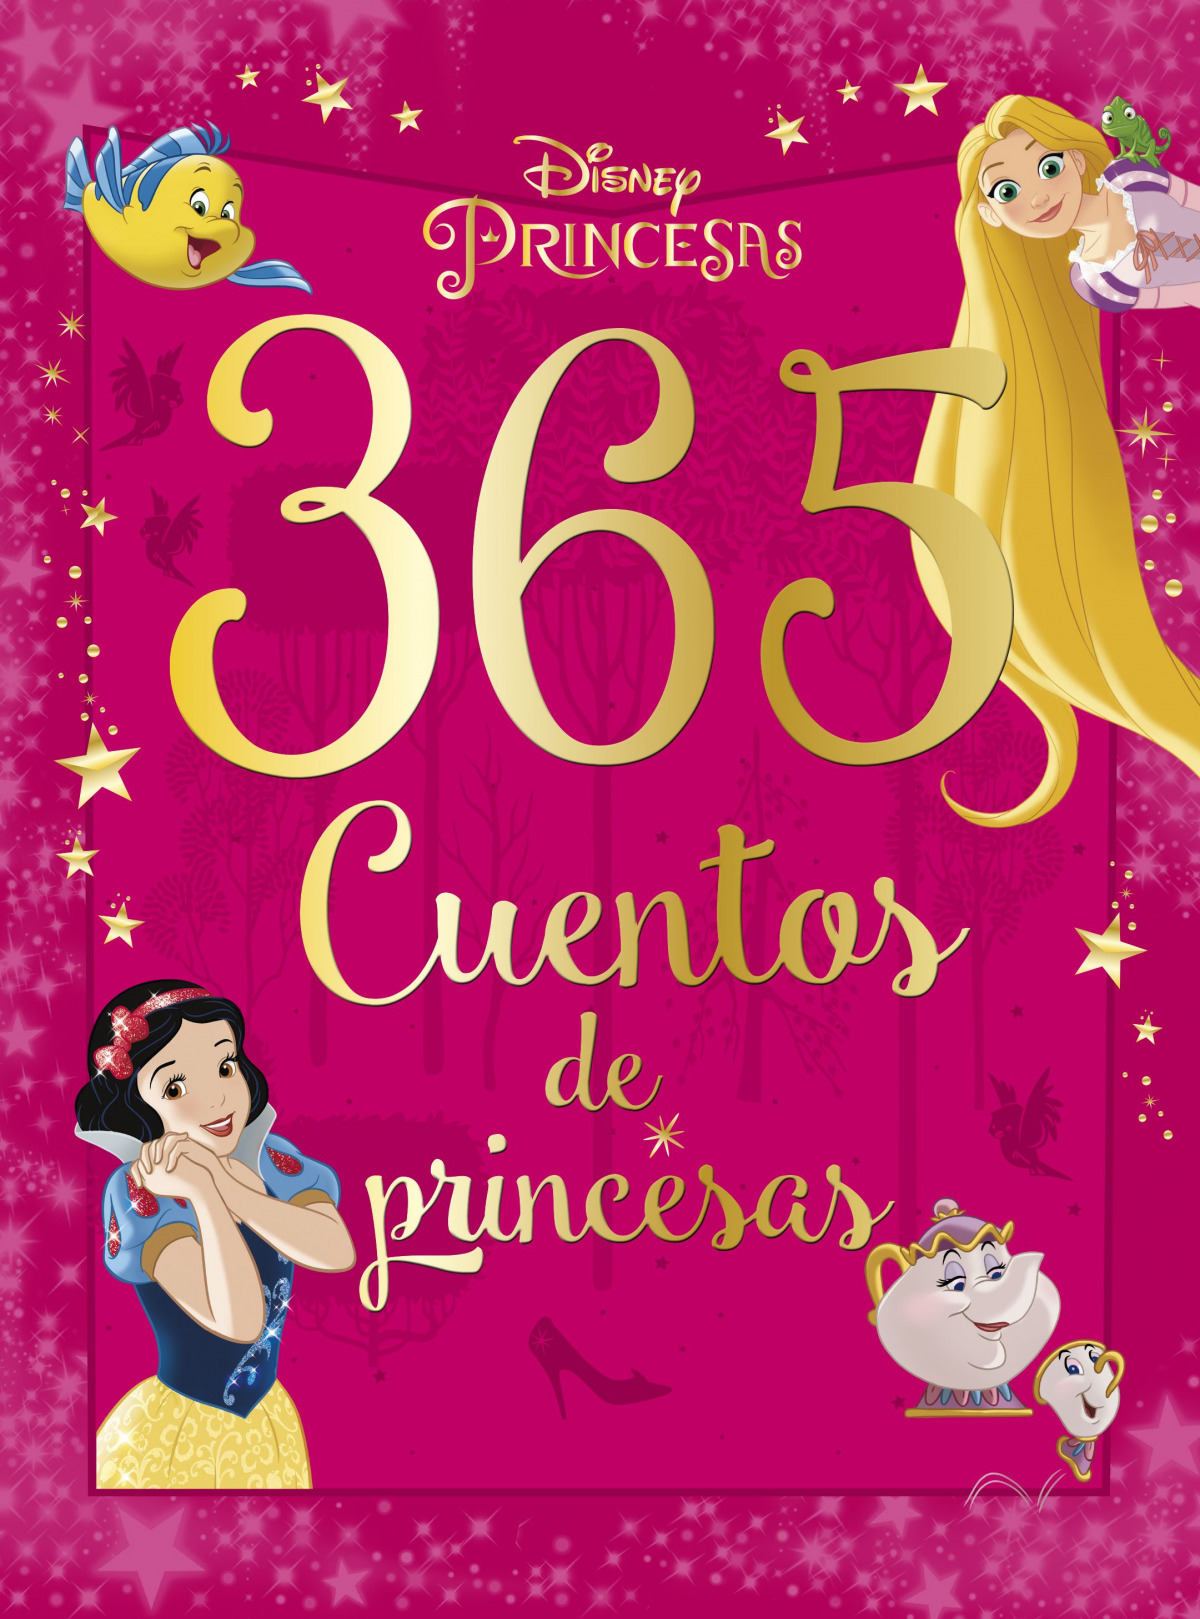 Disney princesas - Mis cuentos favoritos